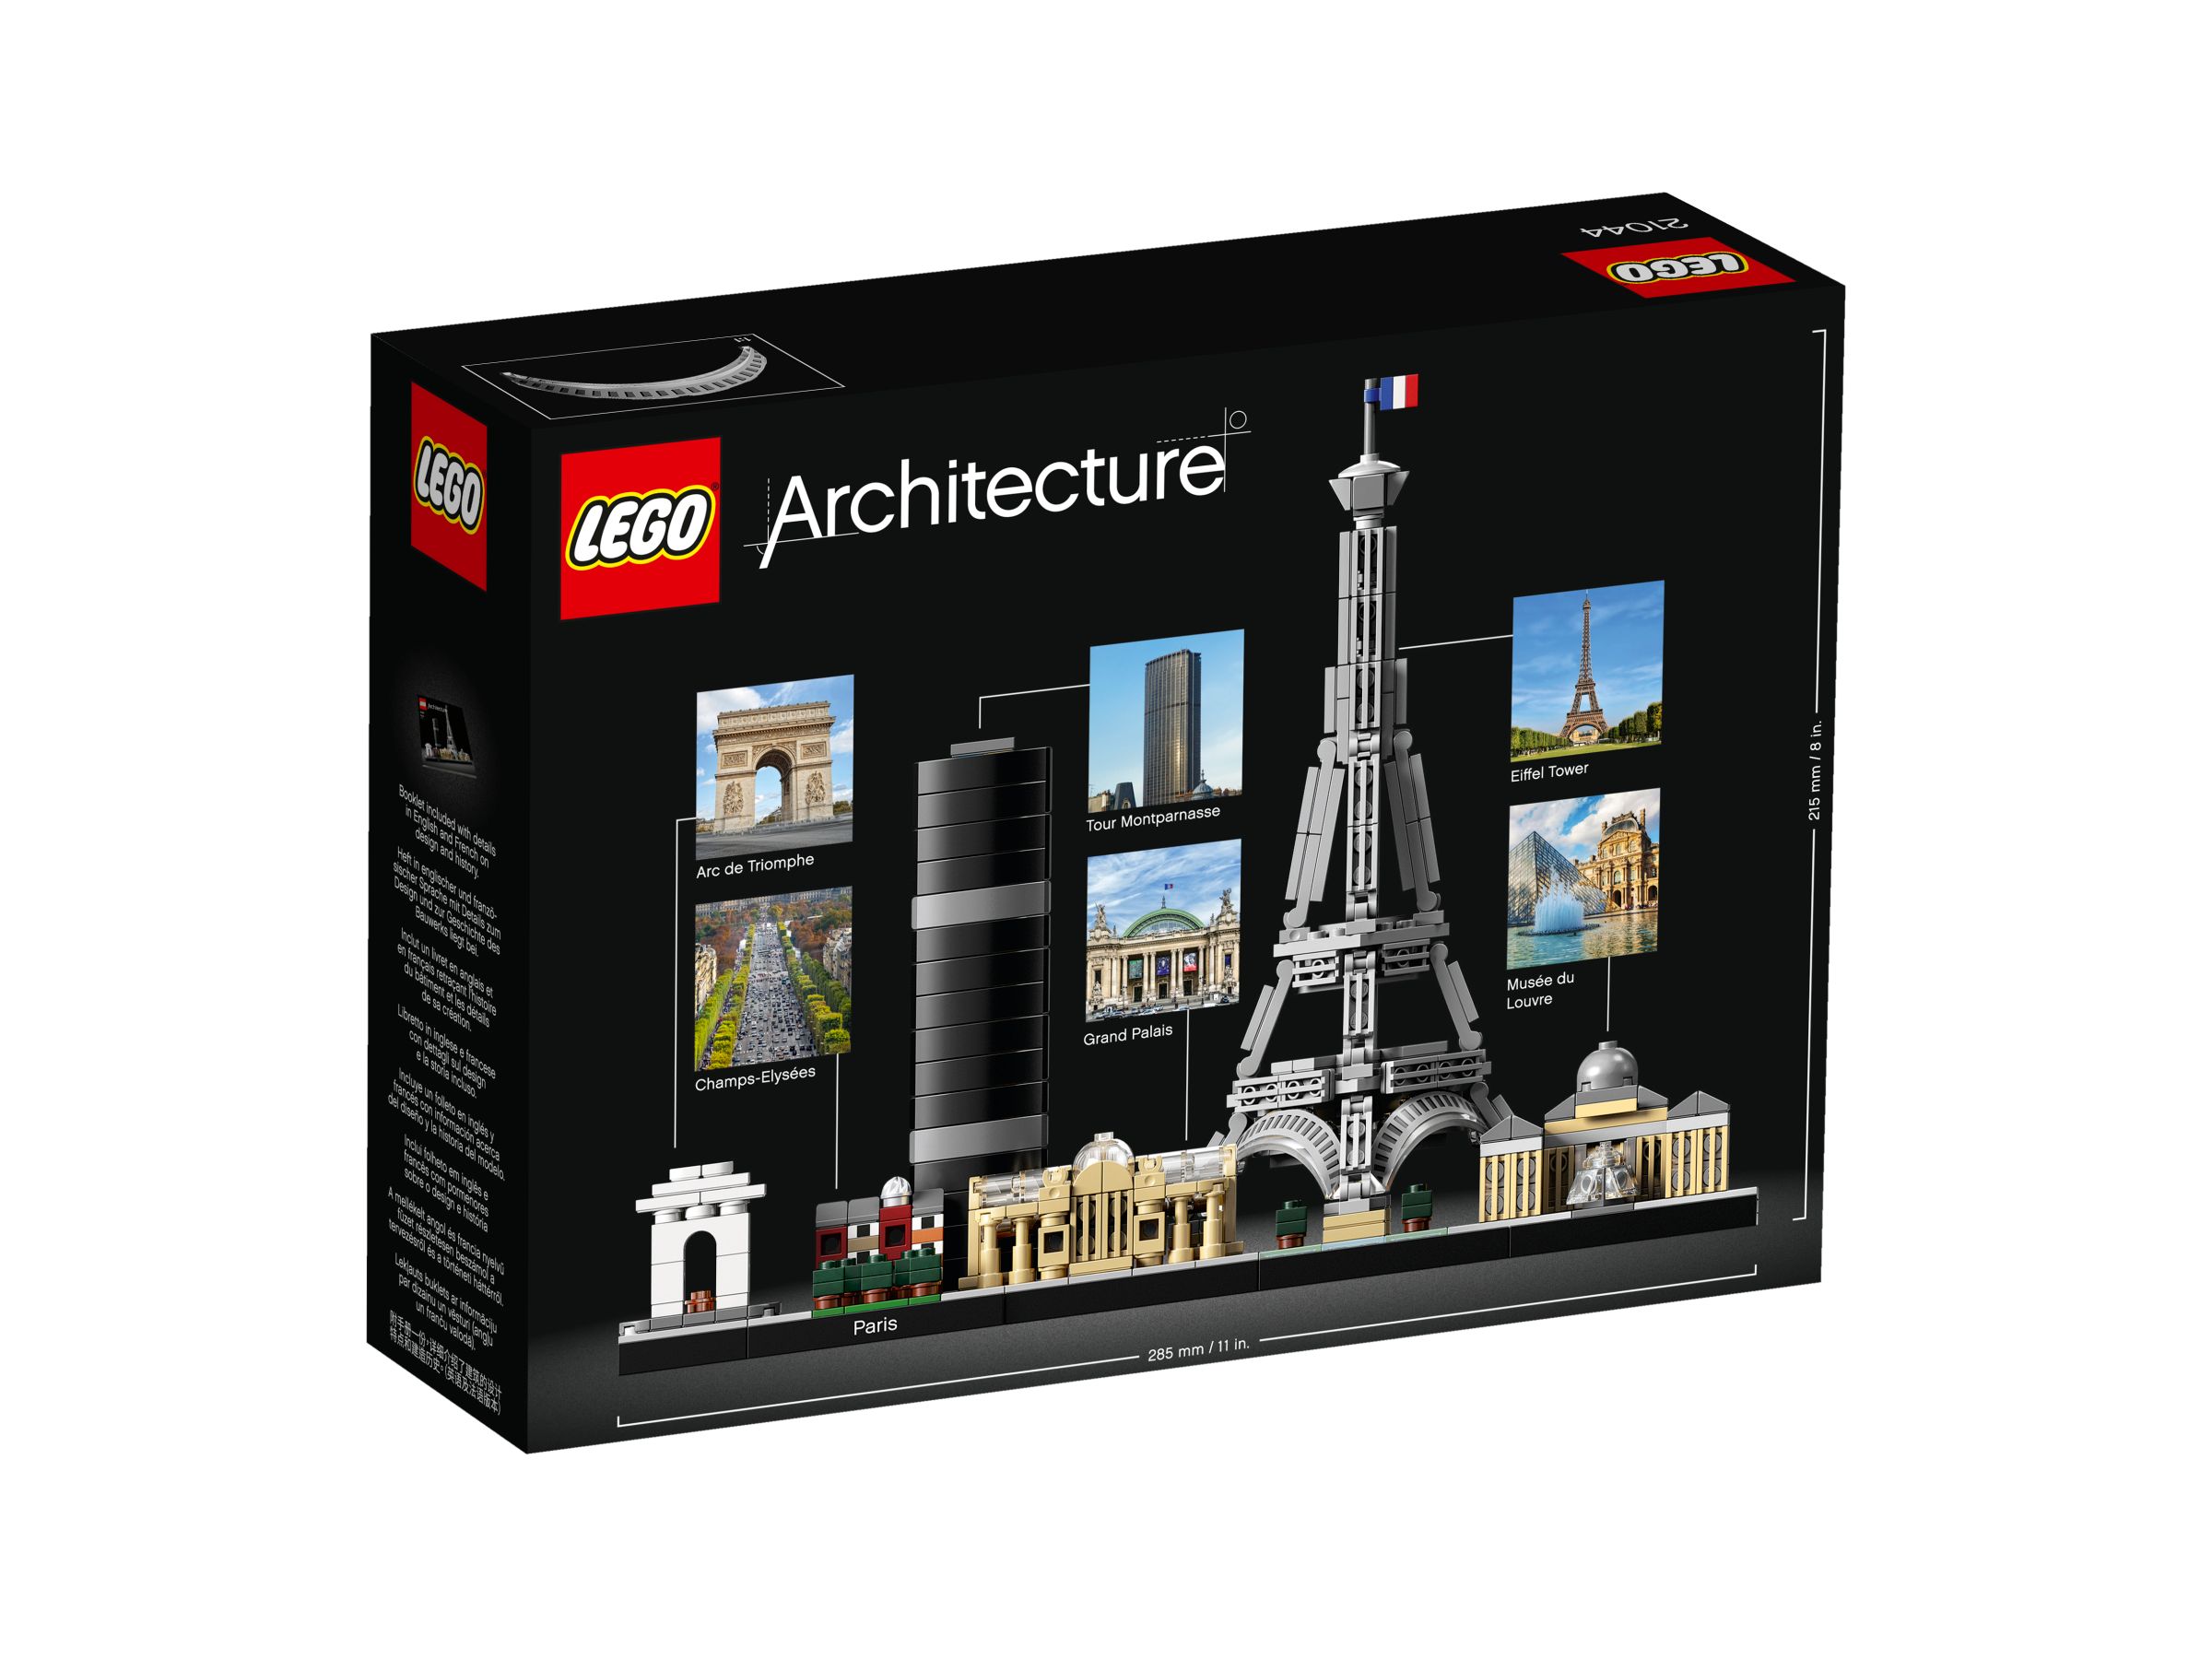 LEGO Architecture 21044 Paris LEGO_21044_alt4.jpg